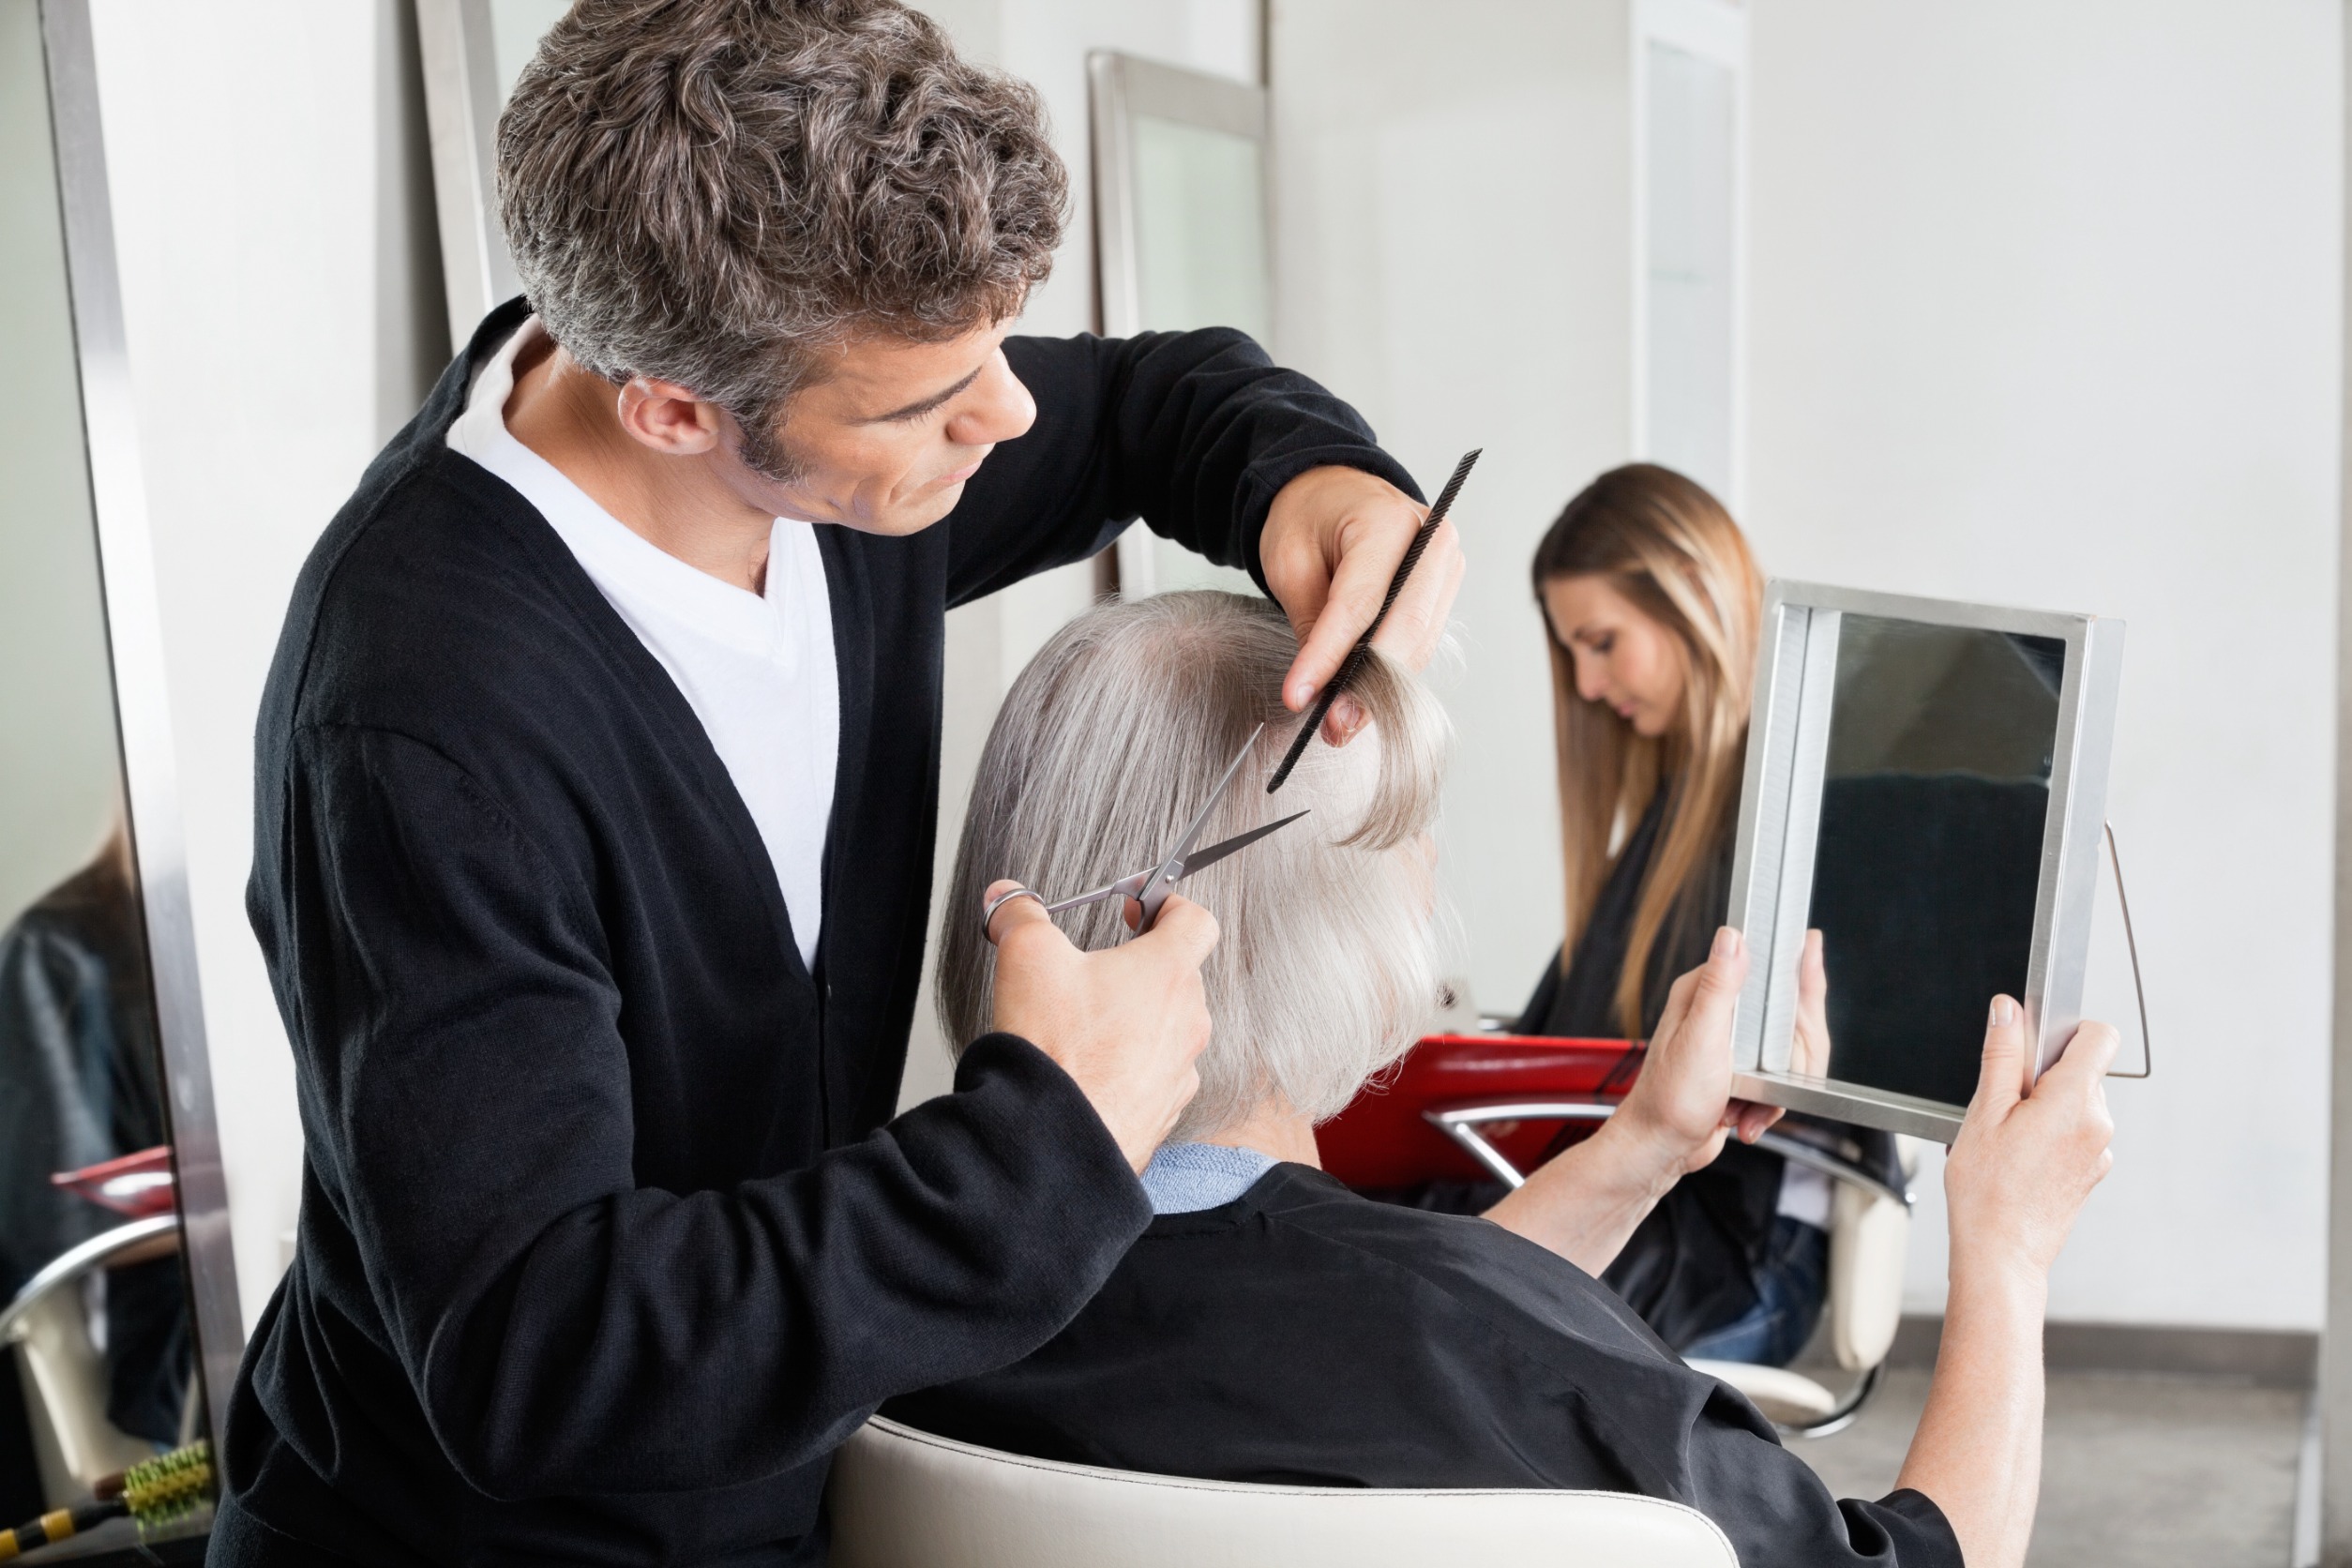 Les étapes clés pour réussir à se faire coiffer chez soi